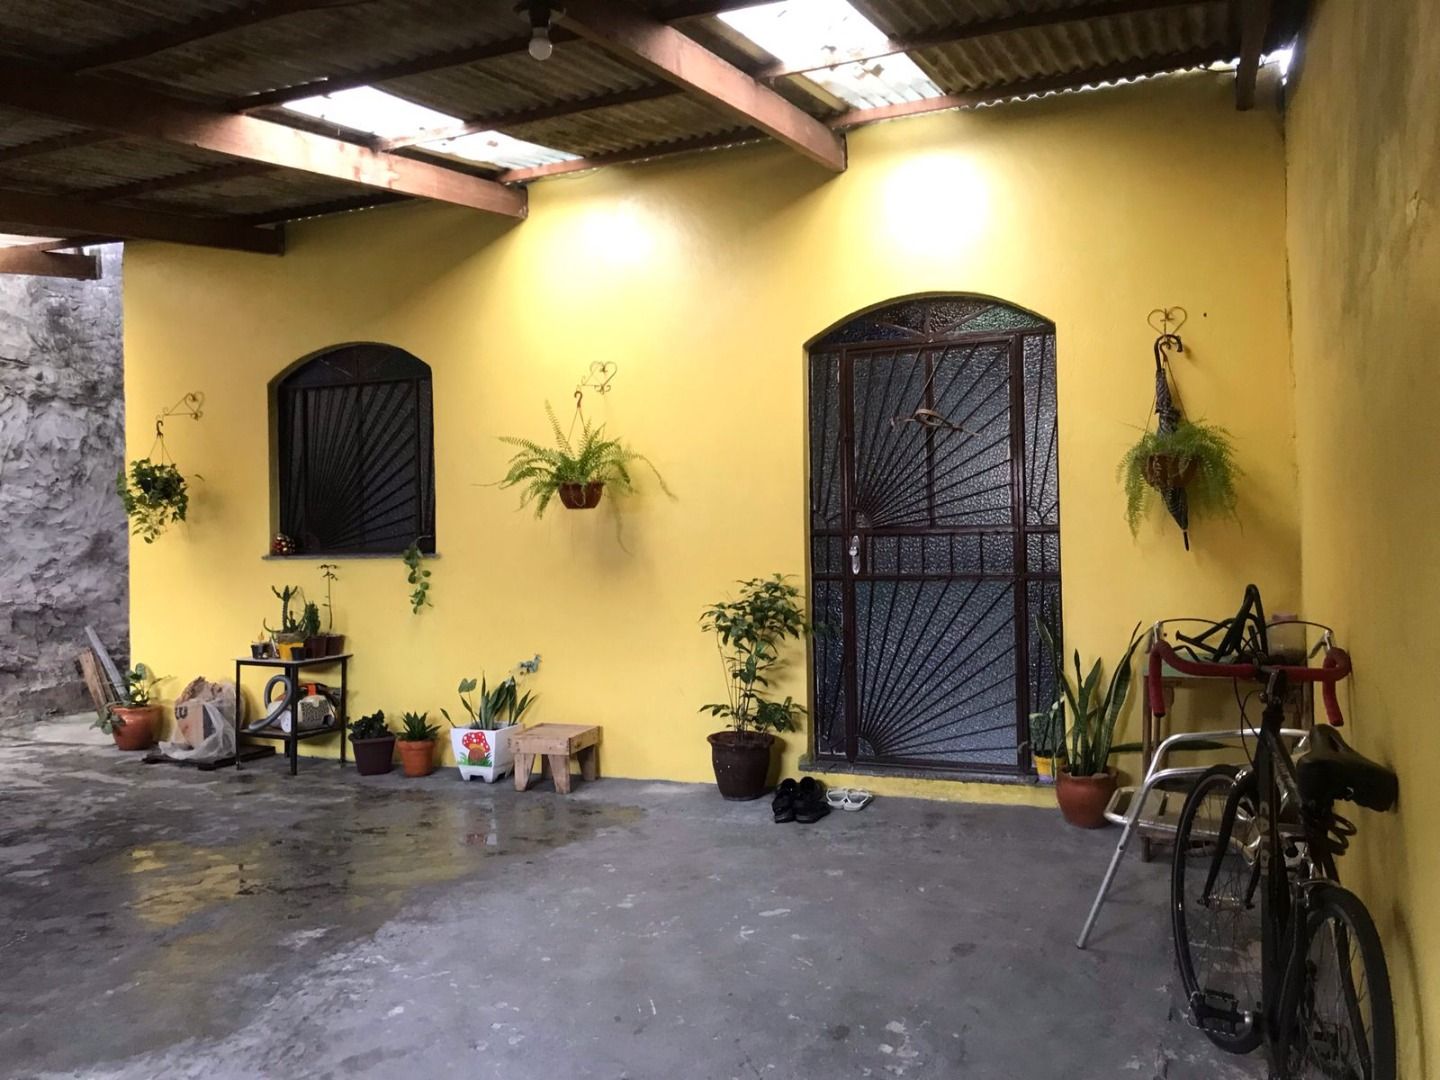 Casa com 2 dormitórios à venda, 150 m² por RS 230.000 - Flores - Manaus-AM